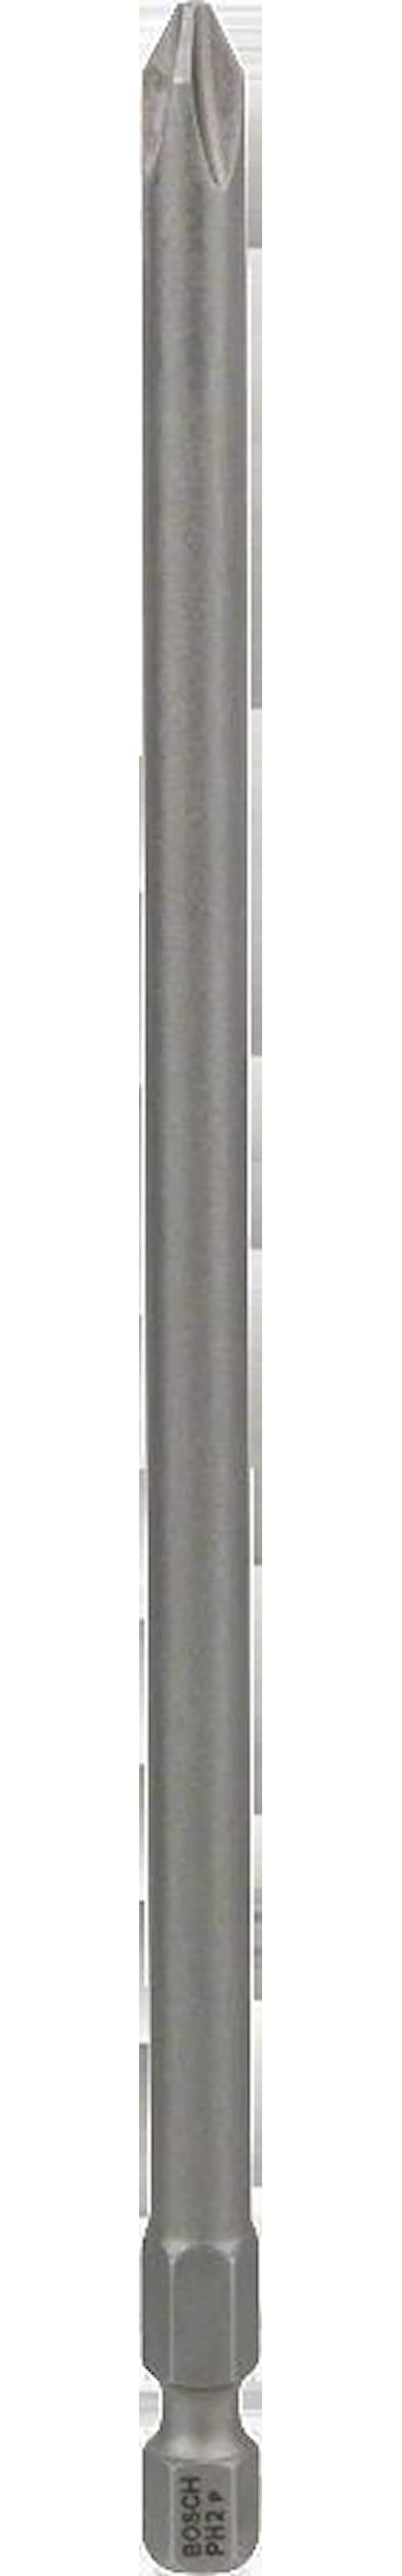 Bosch Ruuvauskärjet Extra-Hart PH 2, 152 mm